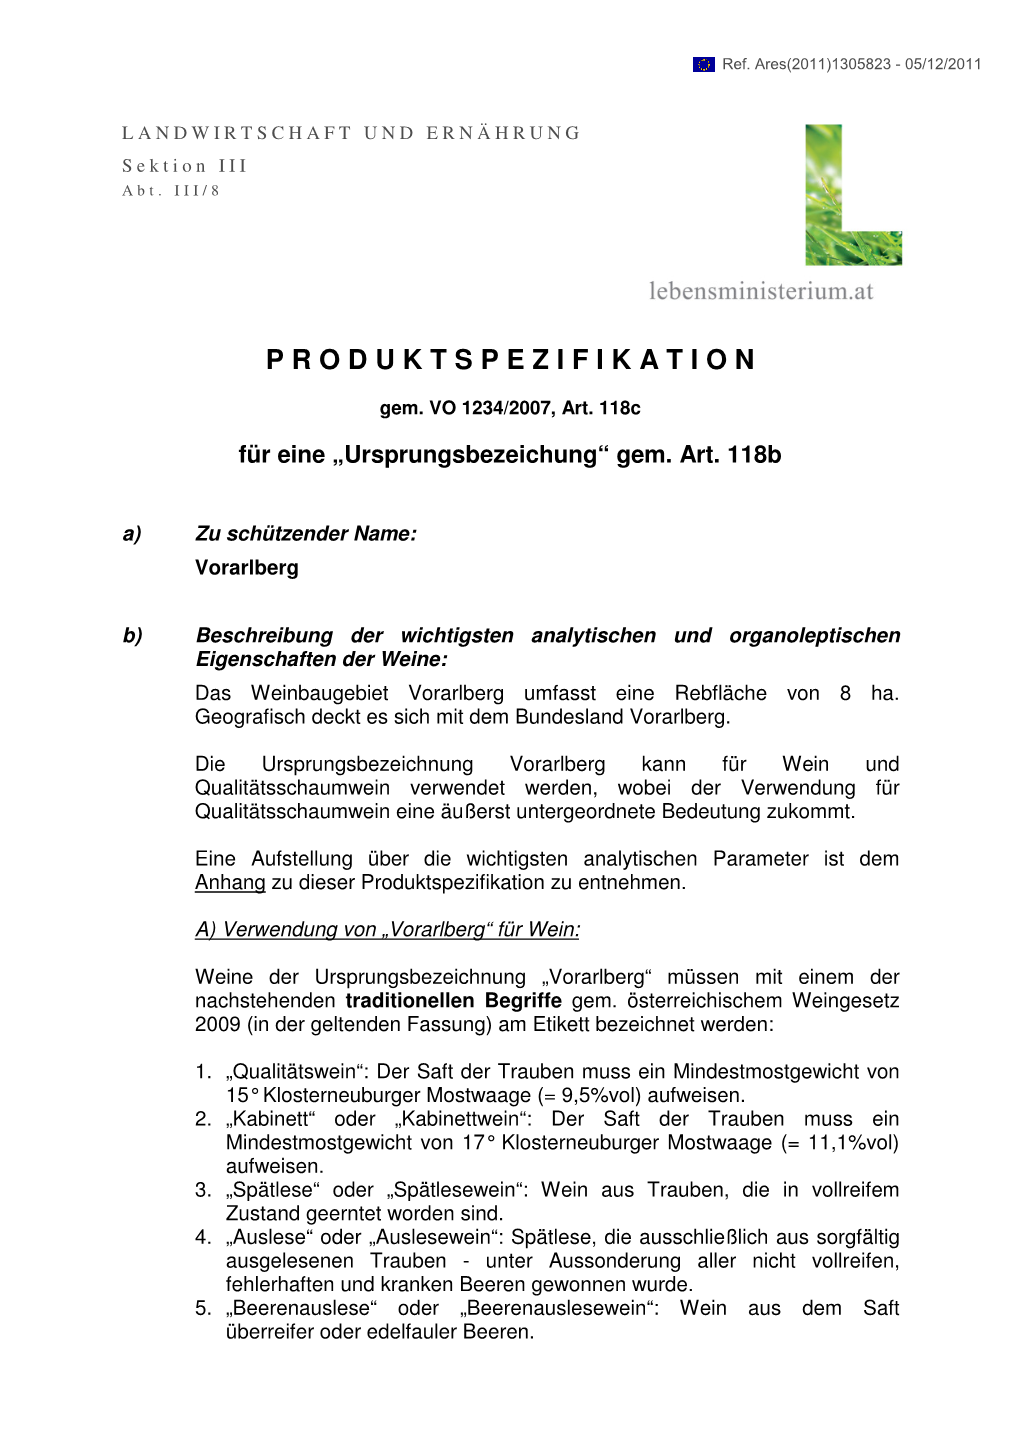 Produktspezifikation Vorarlberg